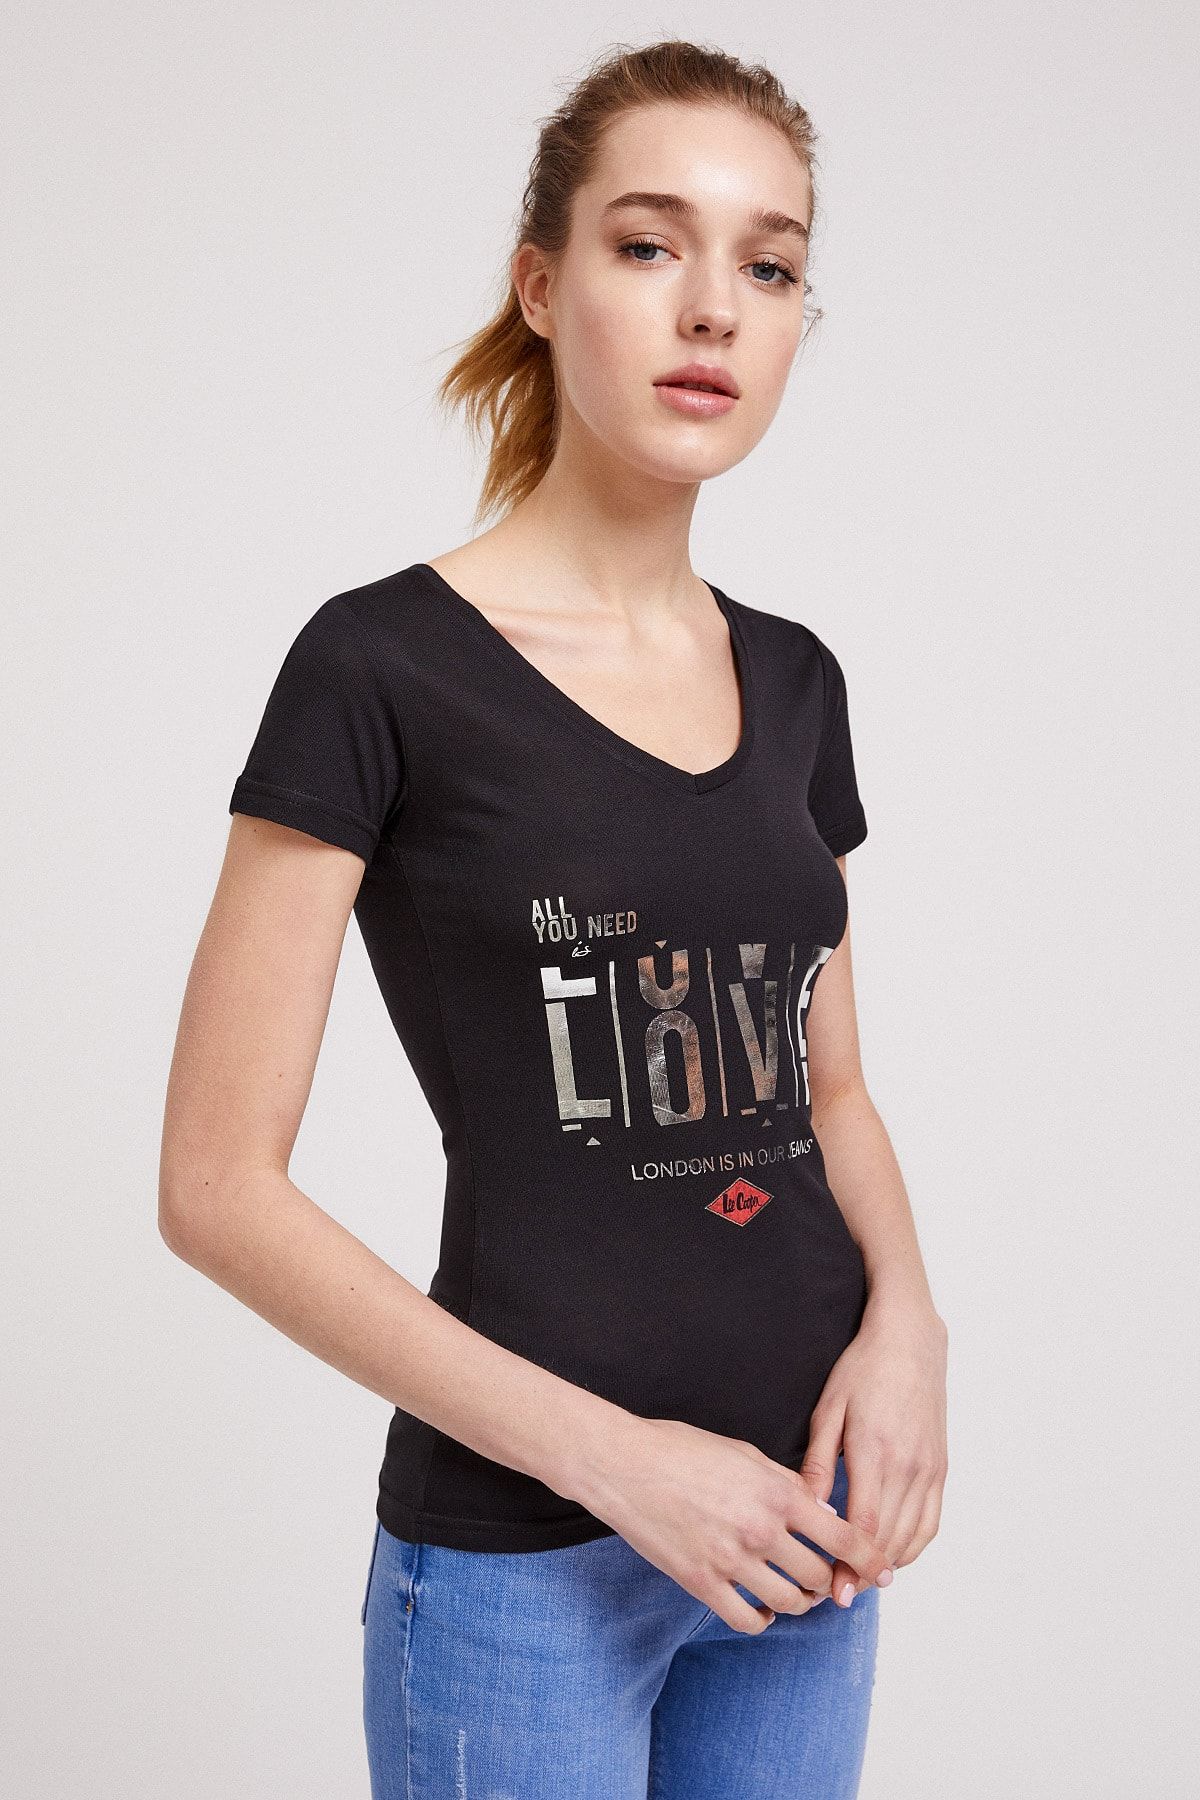 Lee Cooper Kadın Love V Yaka T-Shirt Siyah 202 LCF 242006